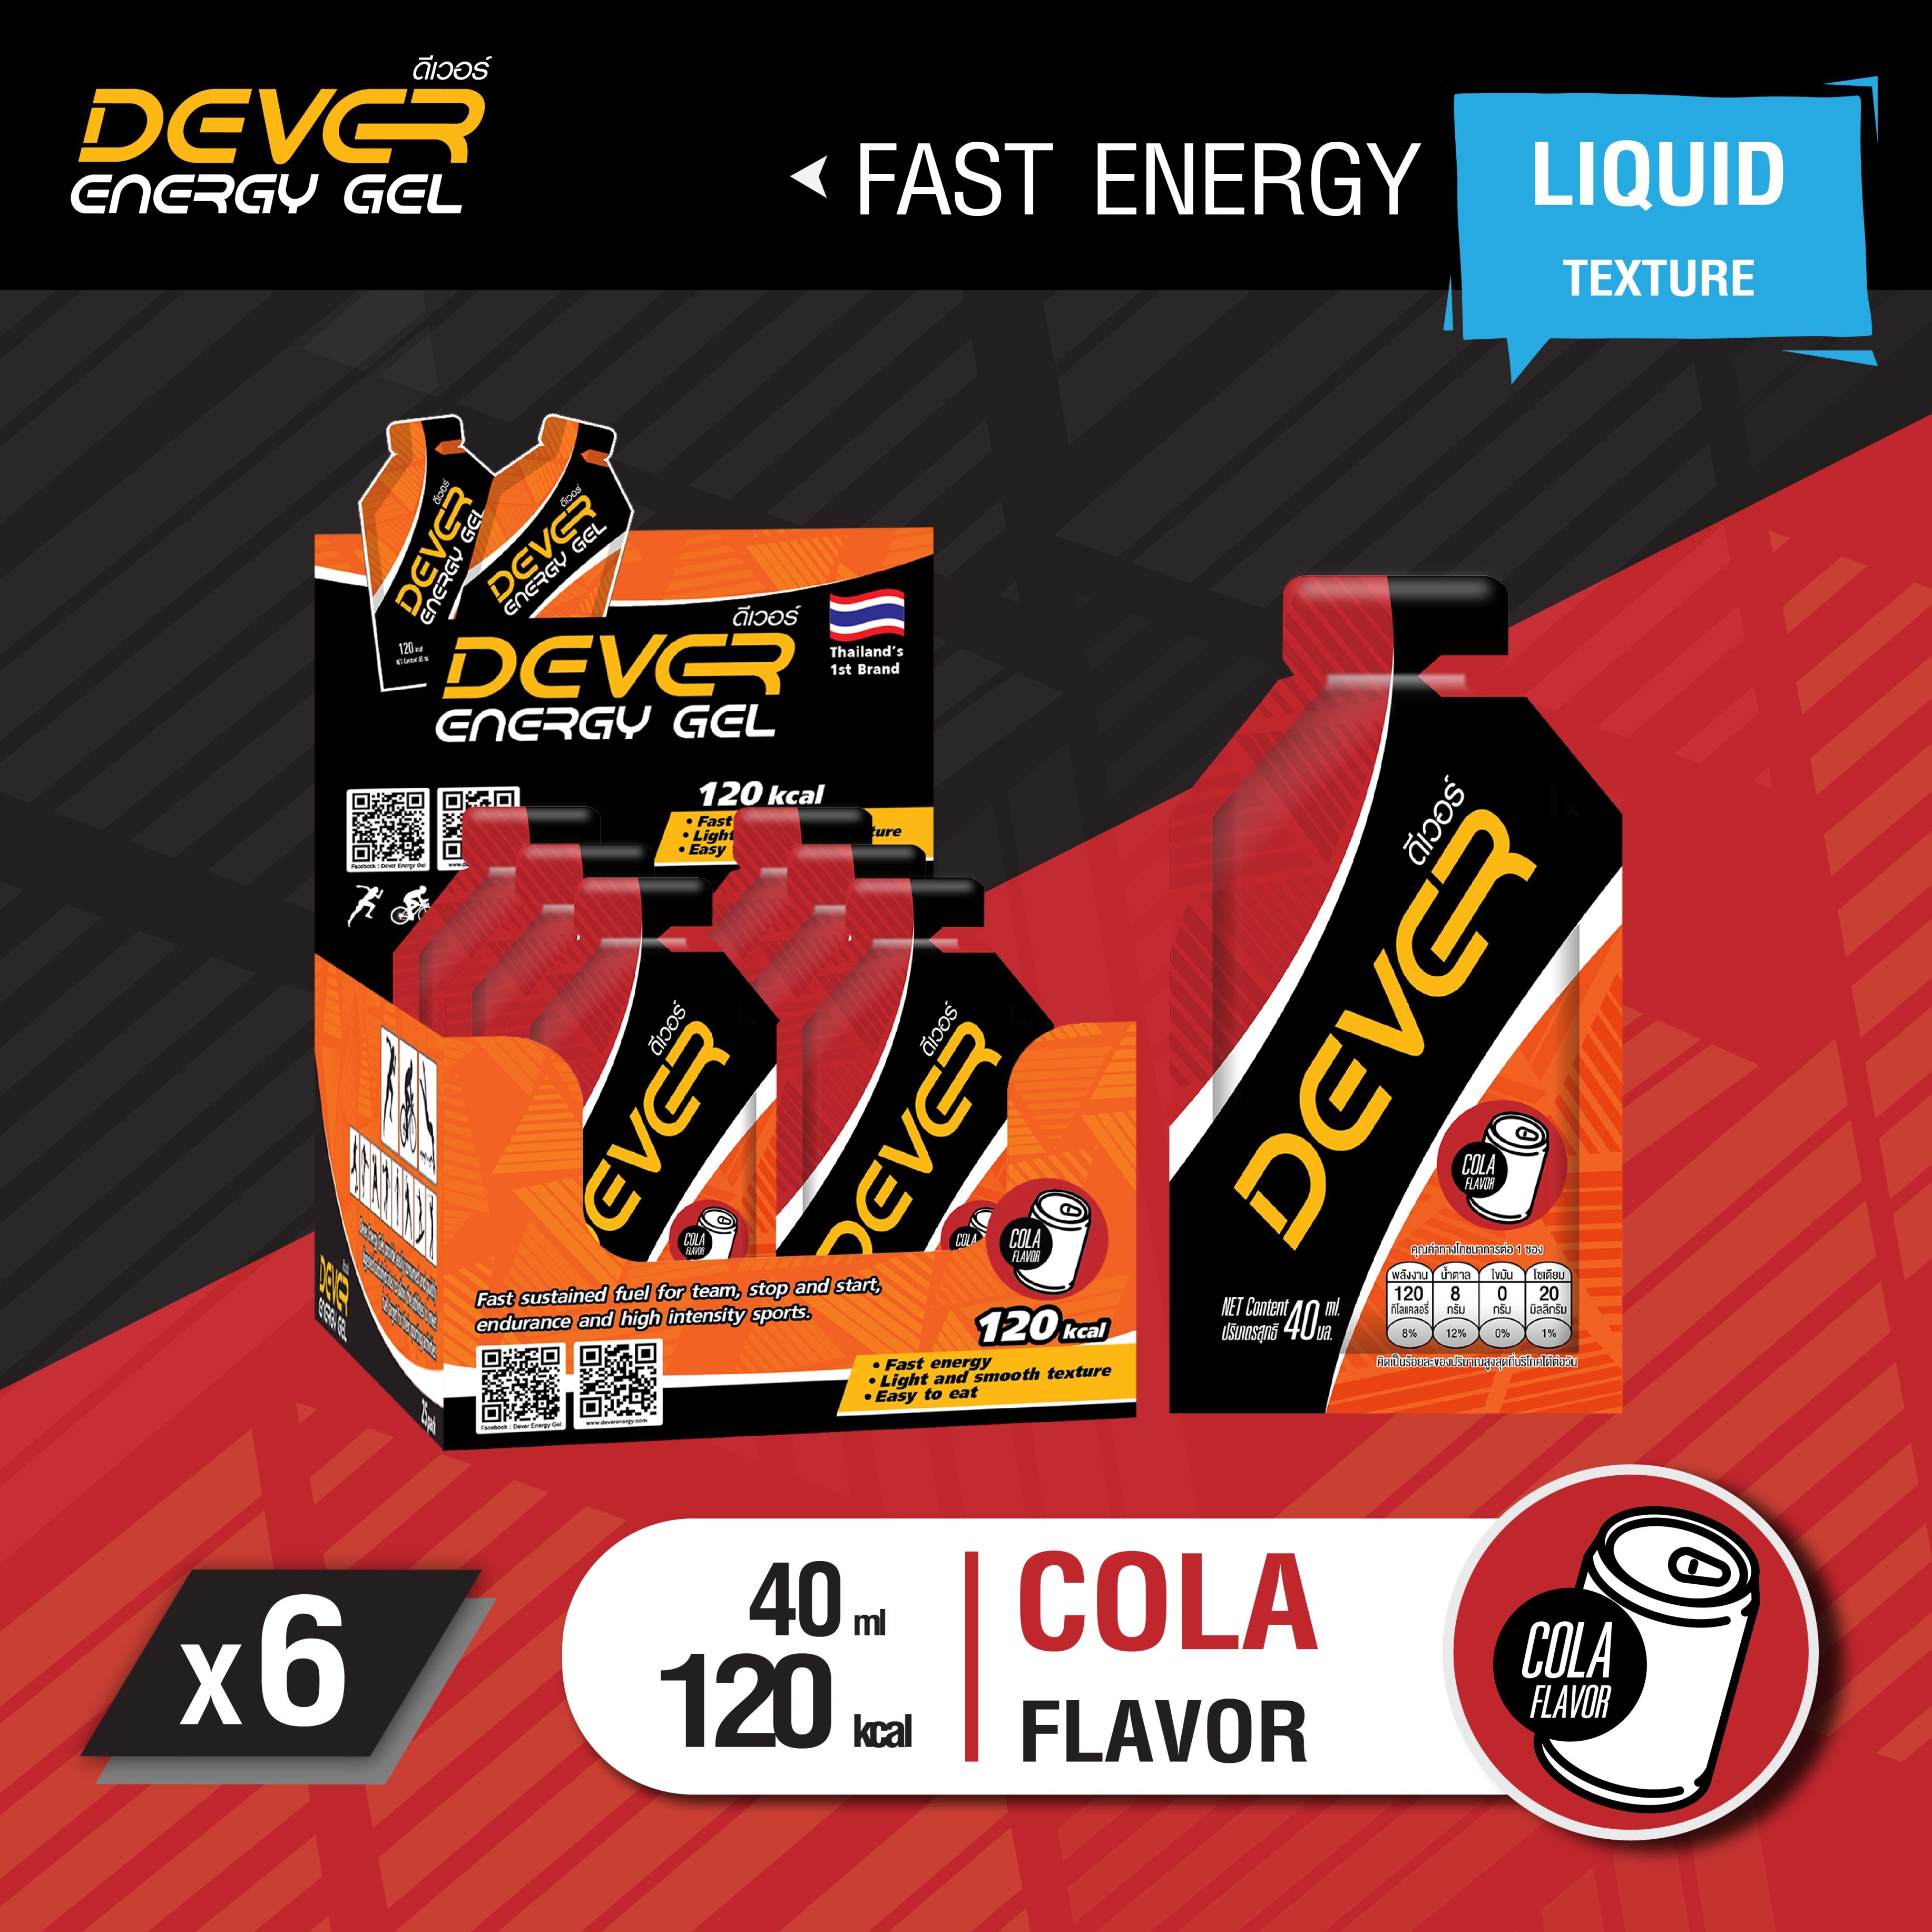 DEVER gel (vital energy) เกลือแร่ สำหรับนักวิ่ง นักกีฬา เจลให้พลังงาน เจลพลังงาน เจลนักวิ่ง เจลวิ่ง เครื่องดื่มให้พลังงาน > 40 ML โคล่า 6 ซอง